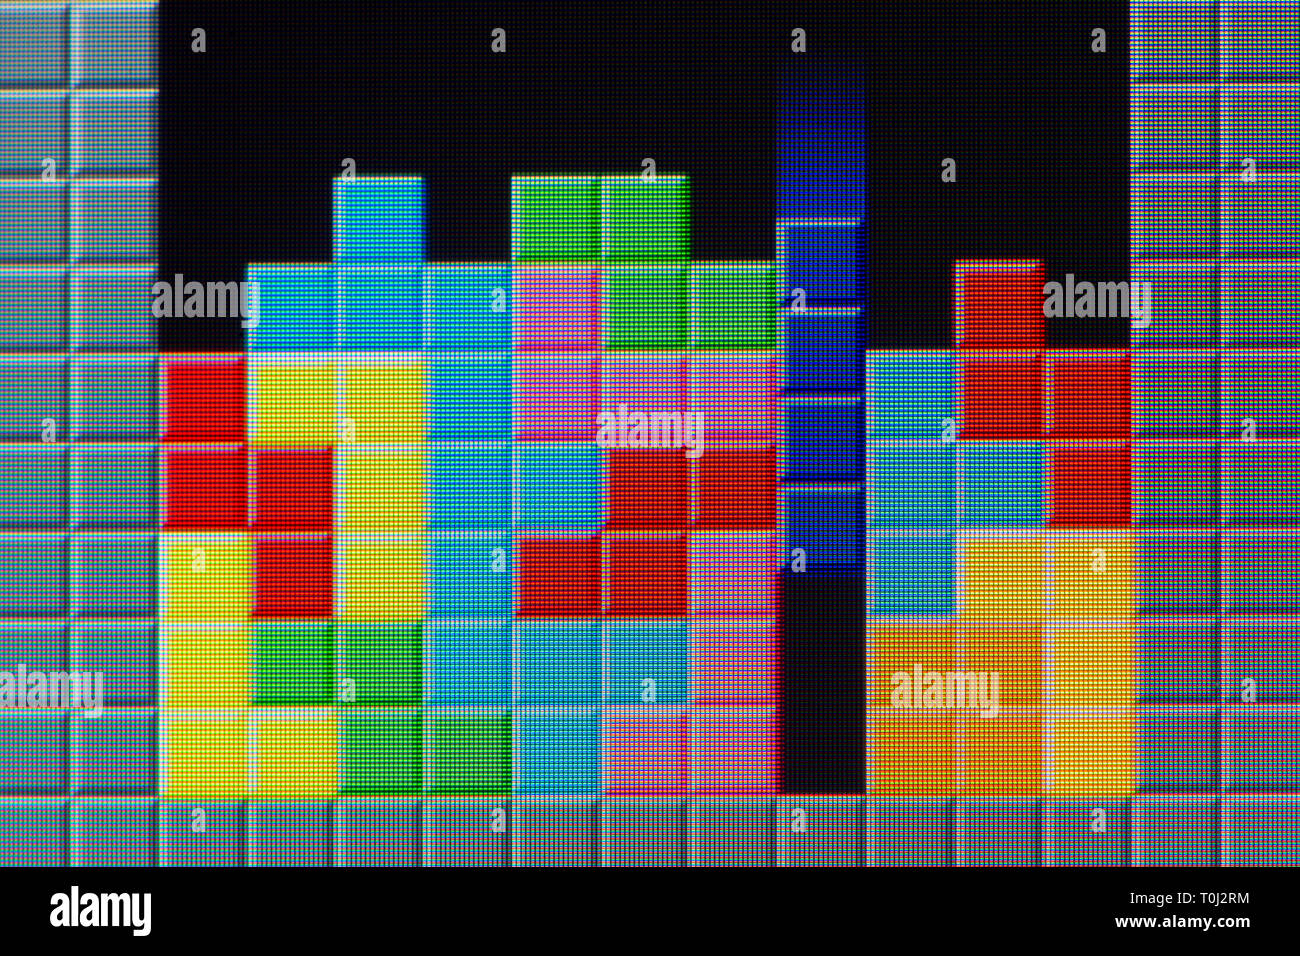 Jeu De Tetris Avec Des Bonbons à Guimauve Image stock - Image du activité,  situez: 132935931